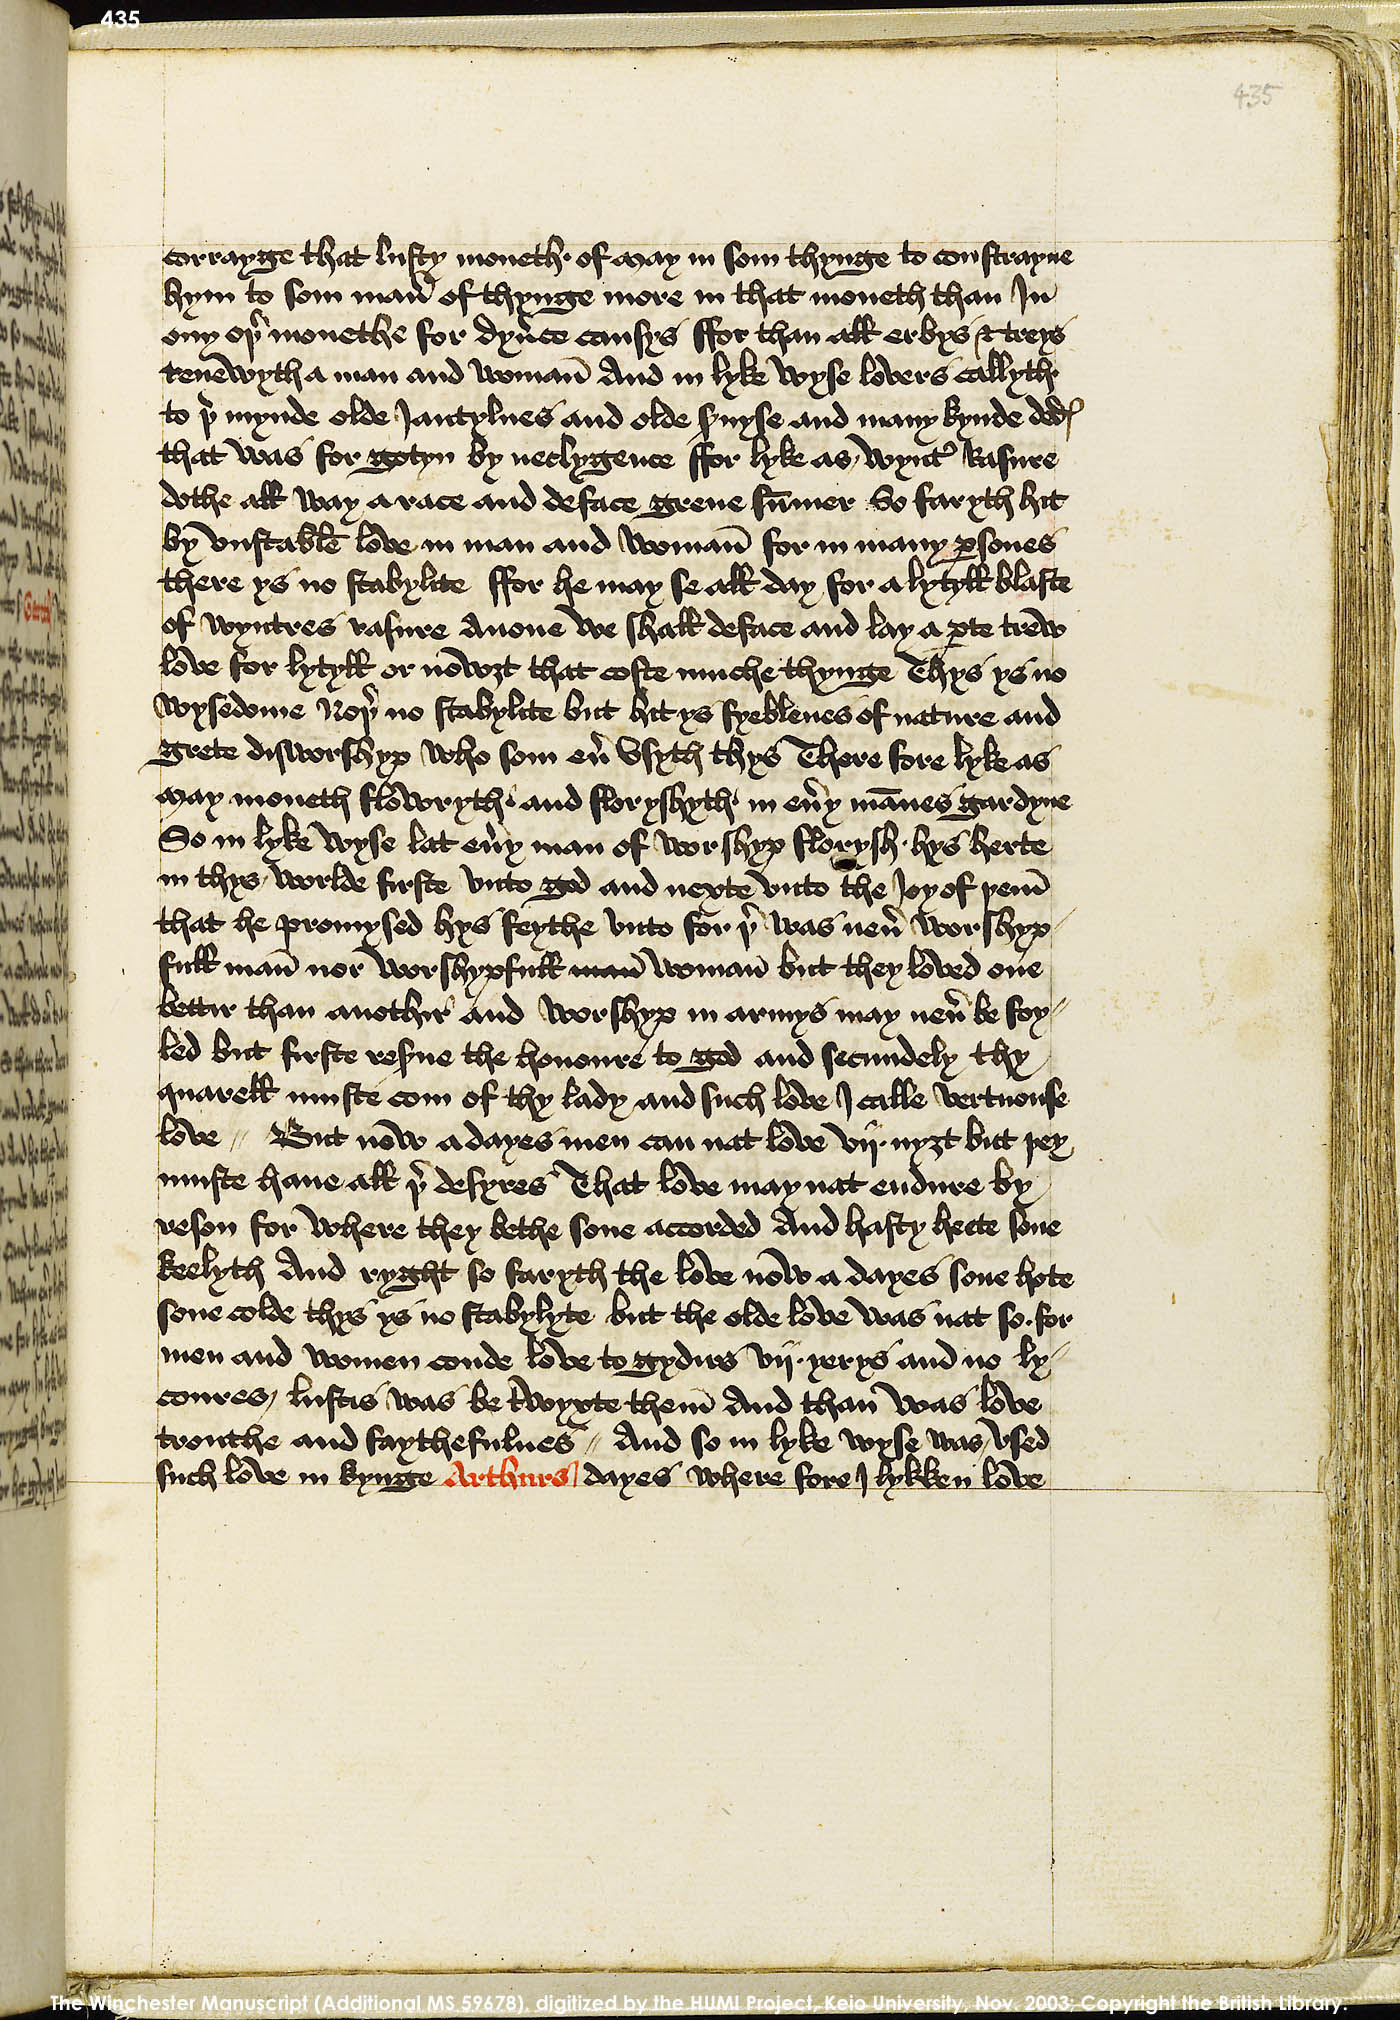 Folio 435r